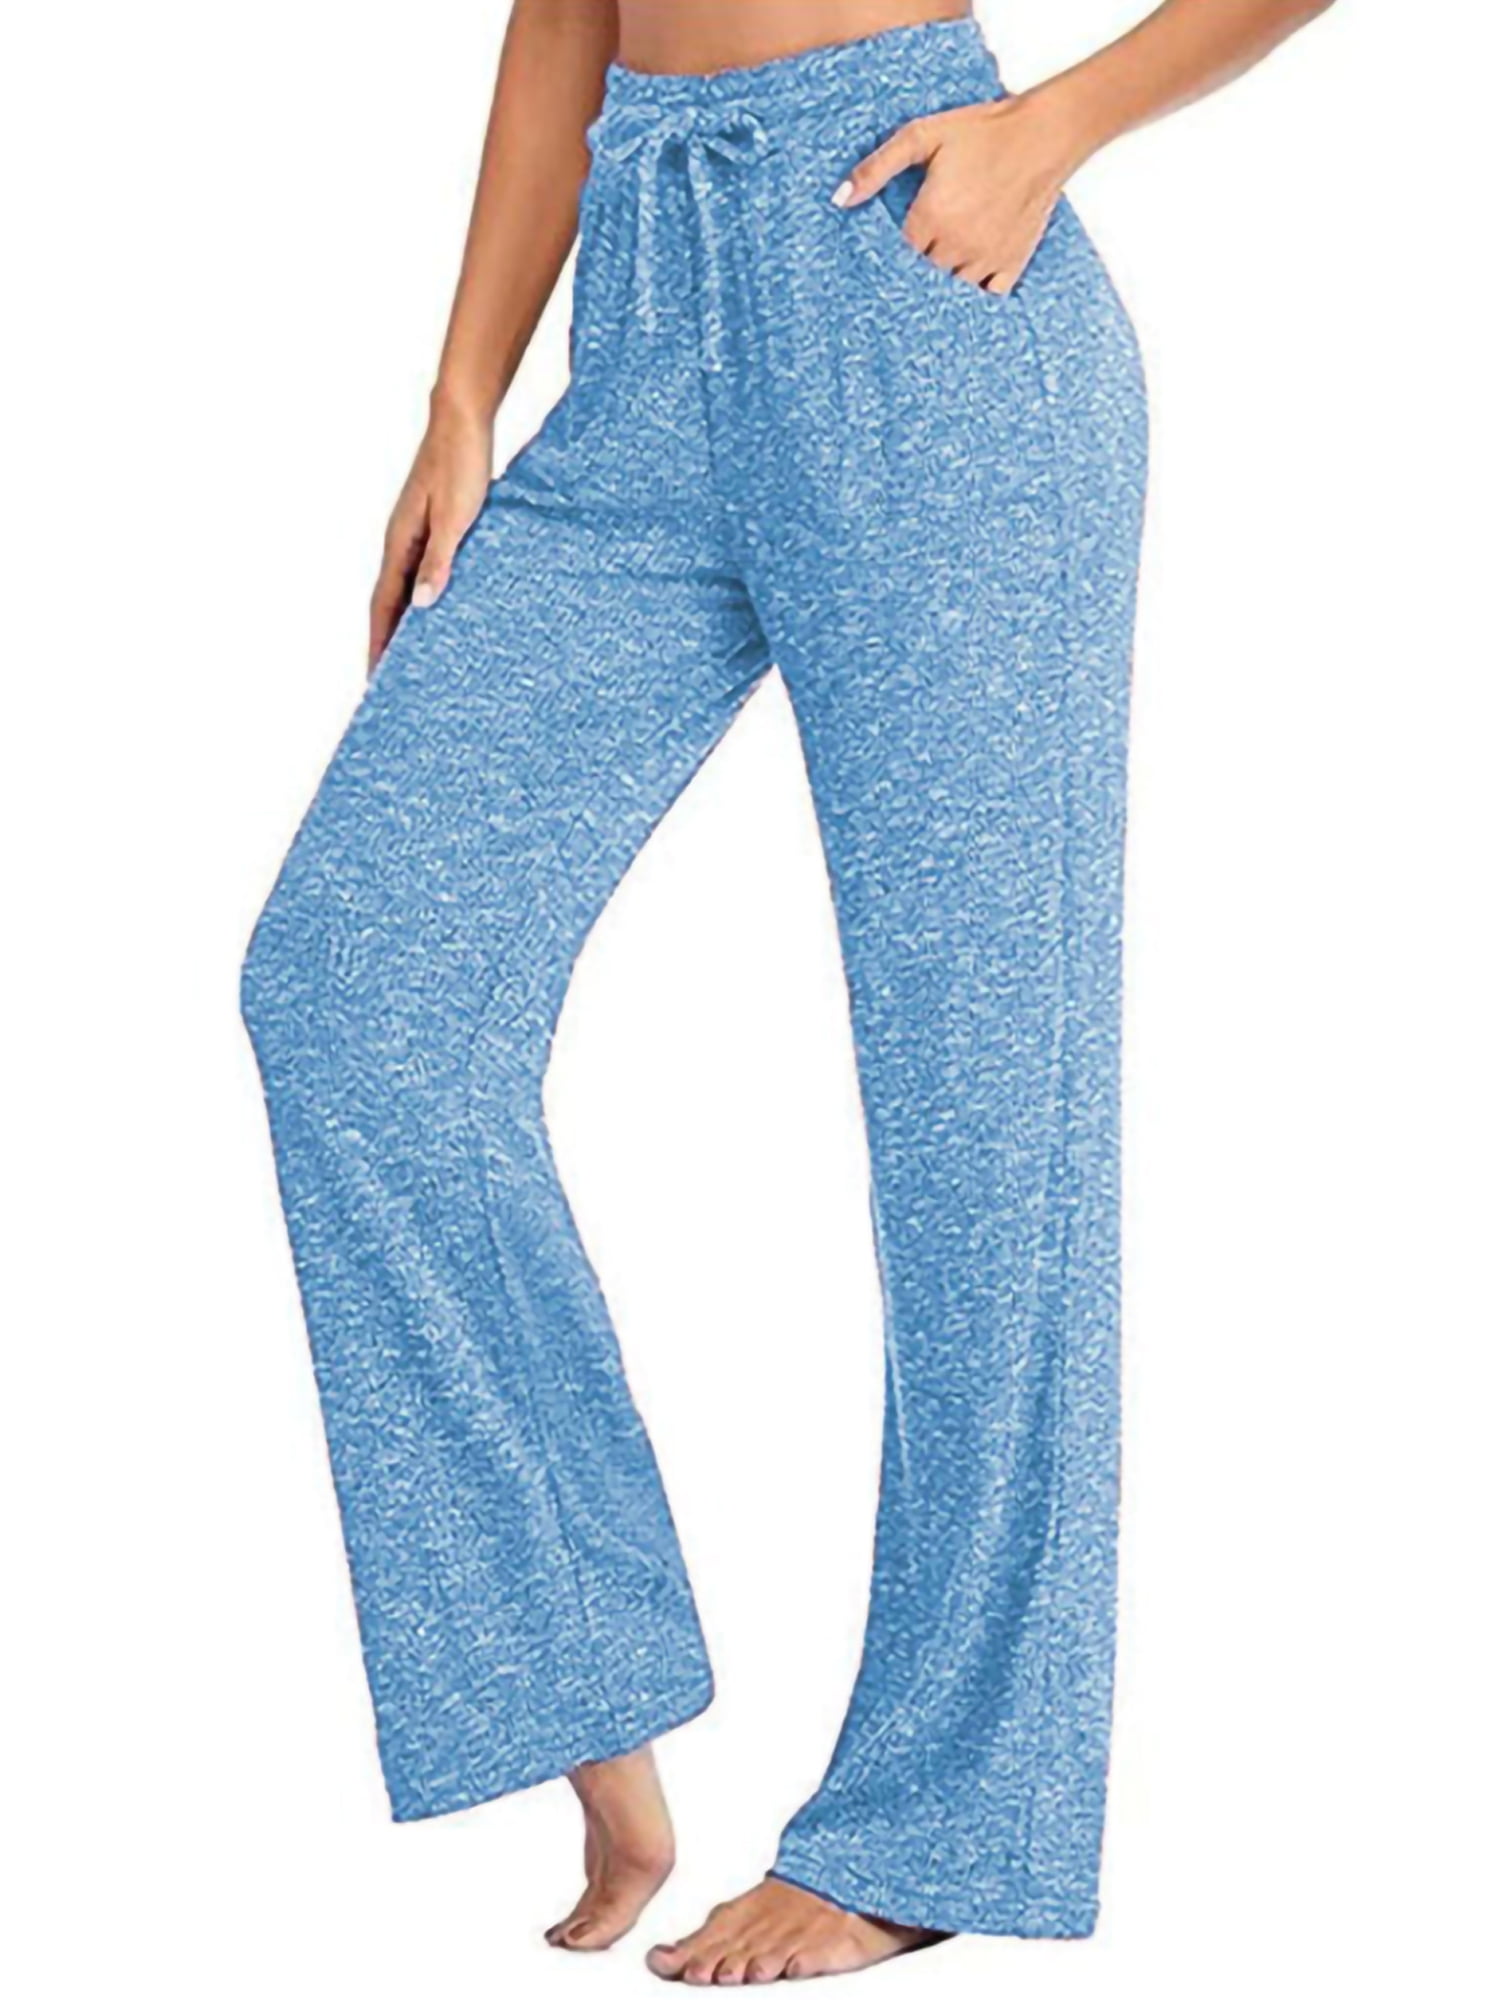 Women's Pajama Pants Cute Butterfly Polka Dot Blue Women Pjs Bottoms Wide  Leg Lounge Palazzo Yoga Drawstring Pants M